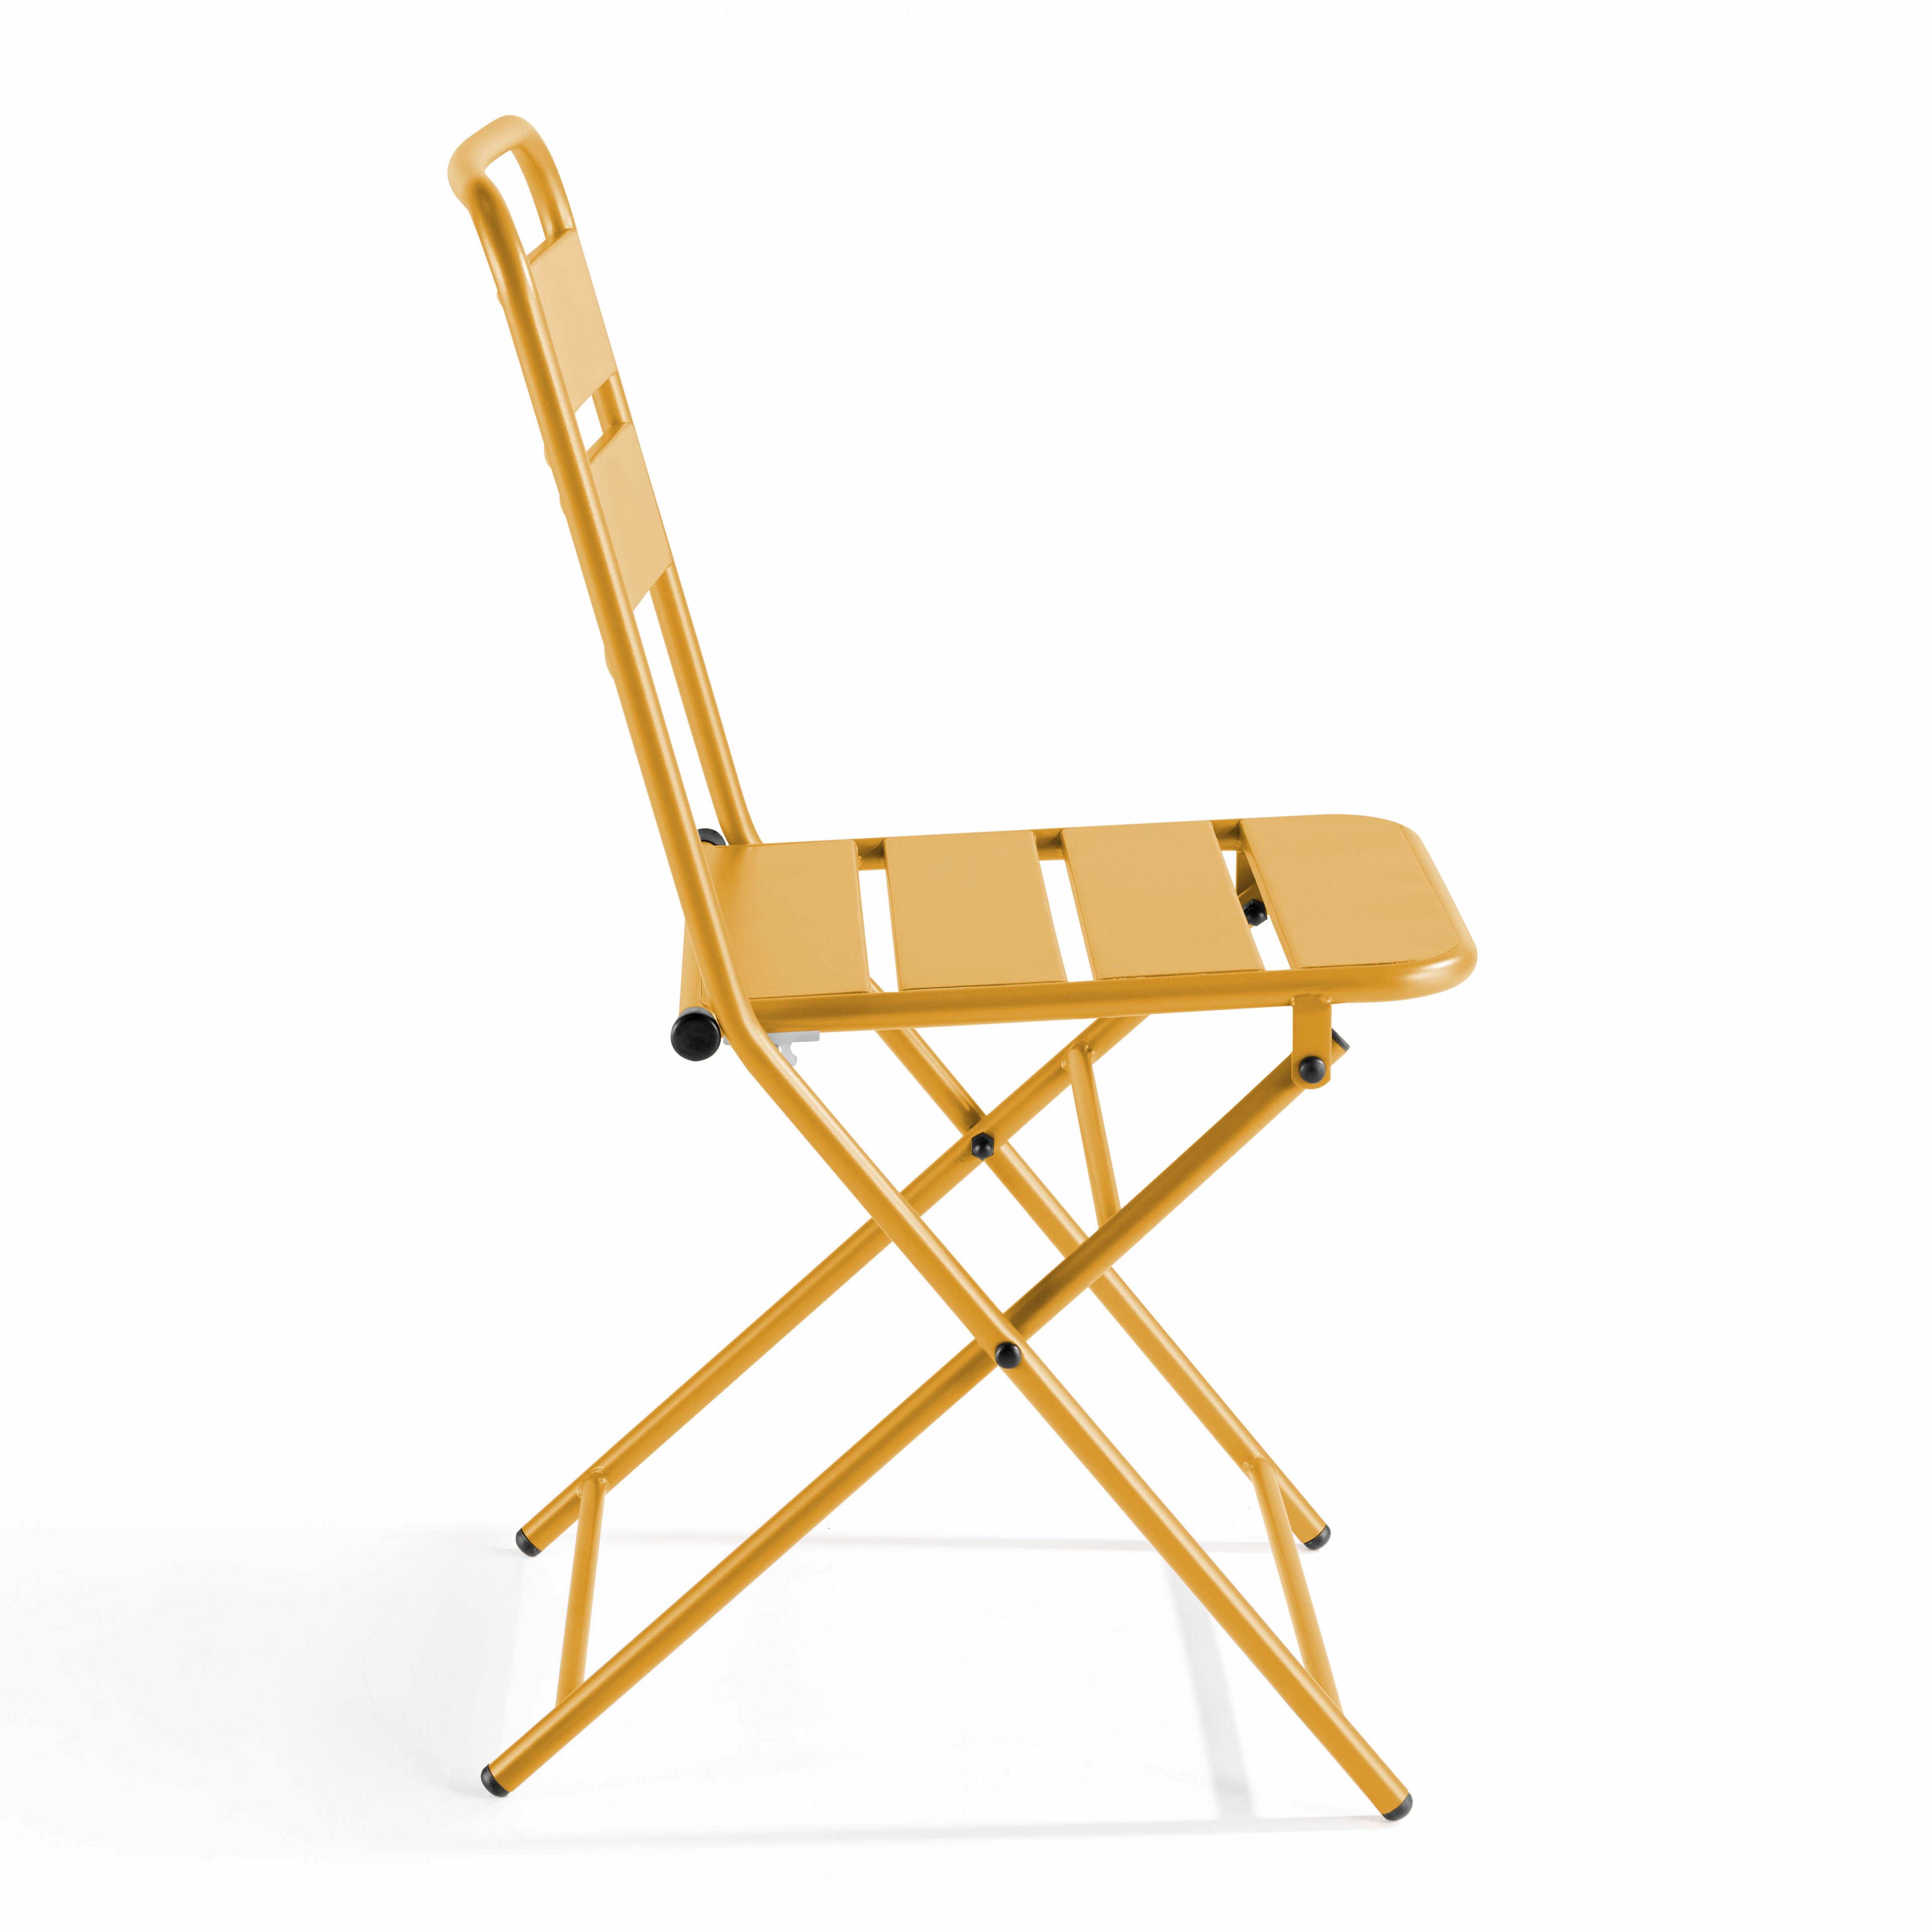 Chaise pliante structure acier, assise en résine, chaise pliable